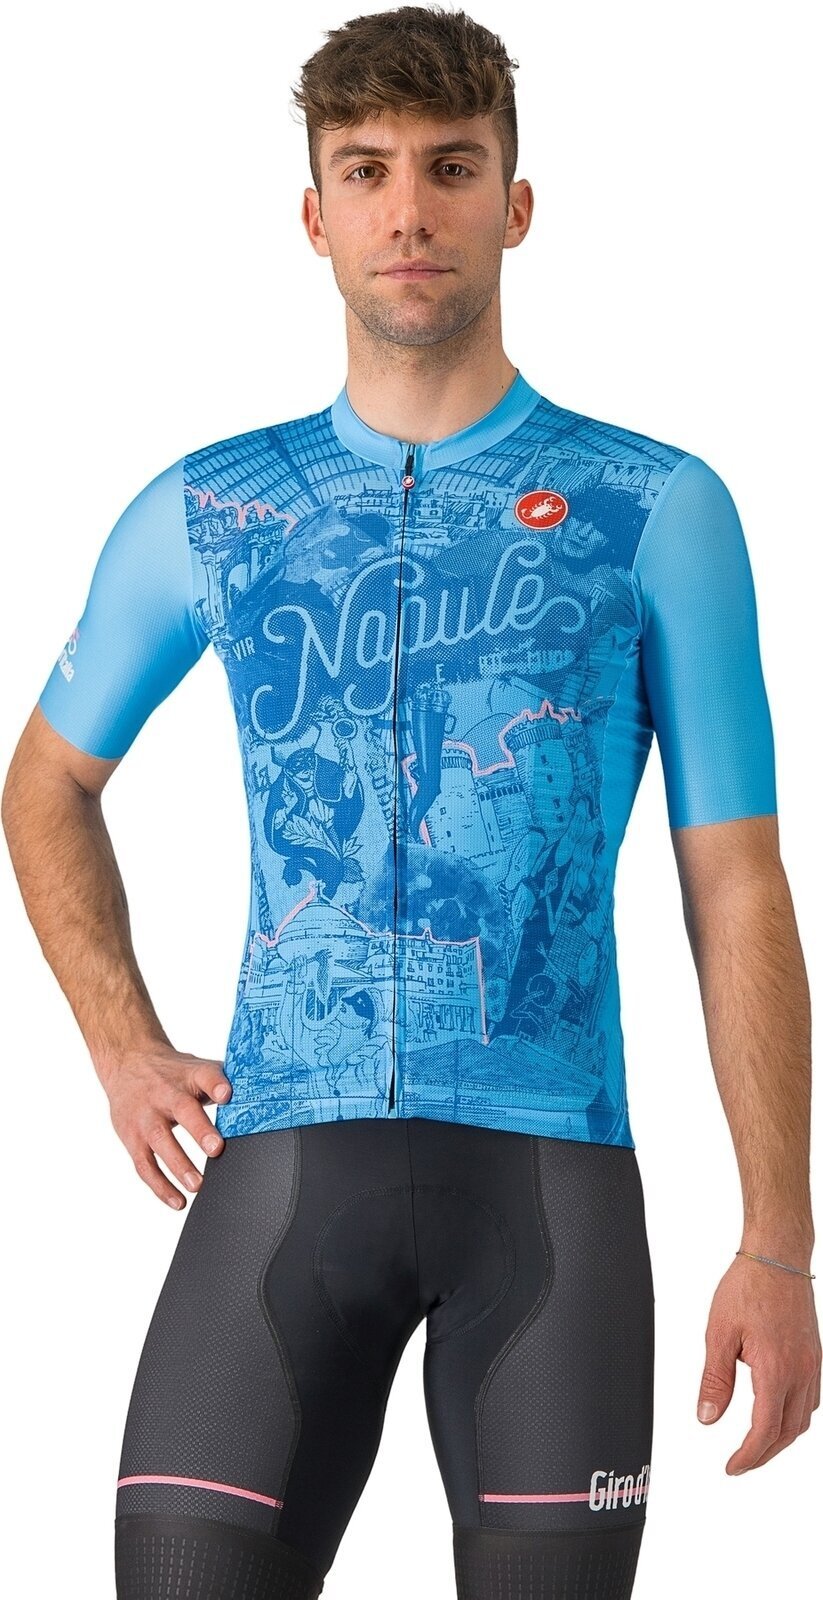 Cycling jersey Castelli Giro107 Napoli Jersey Azzurro Napoli M